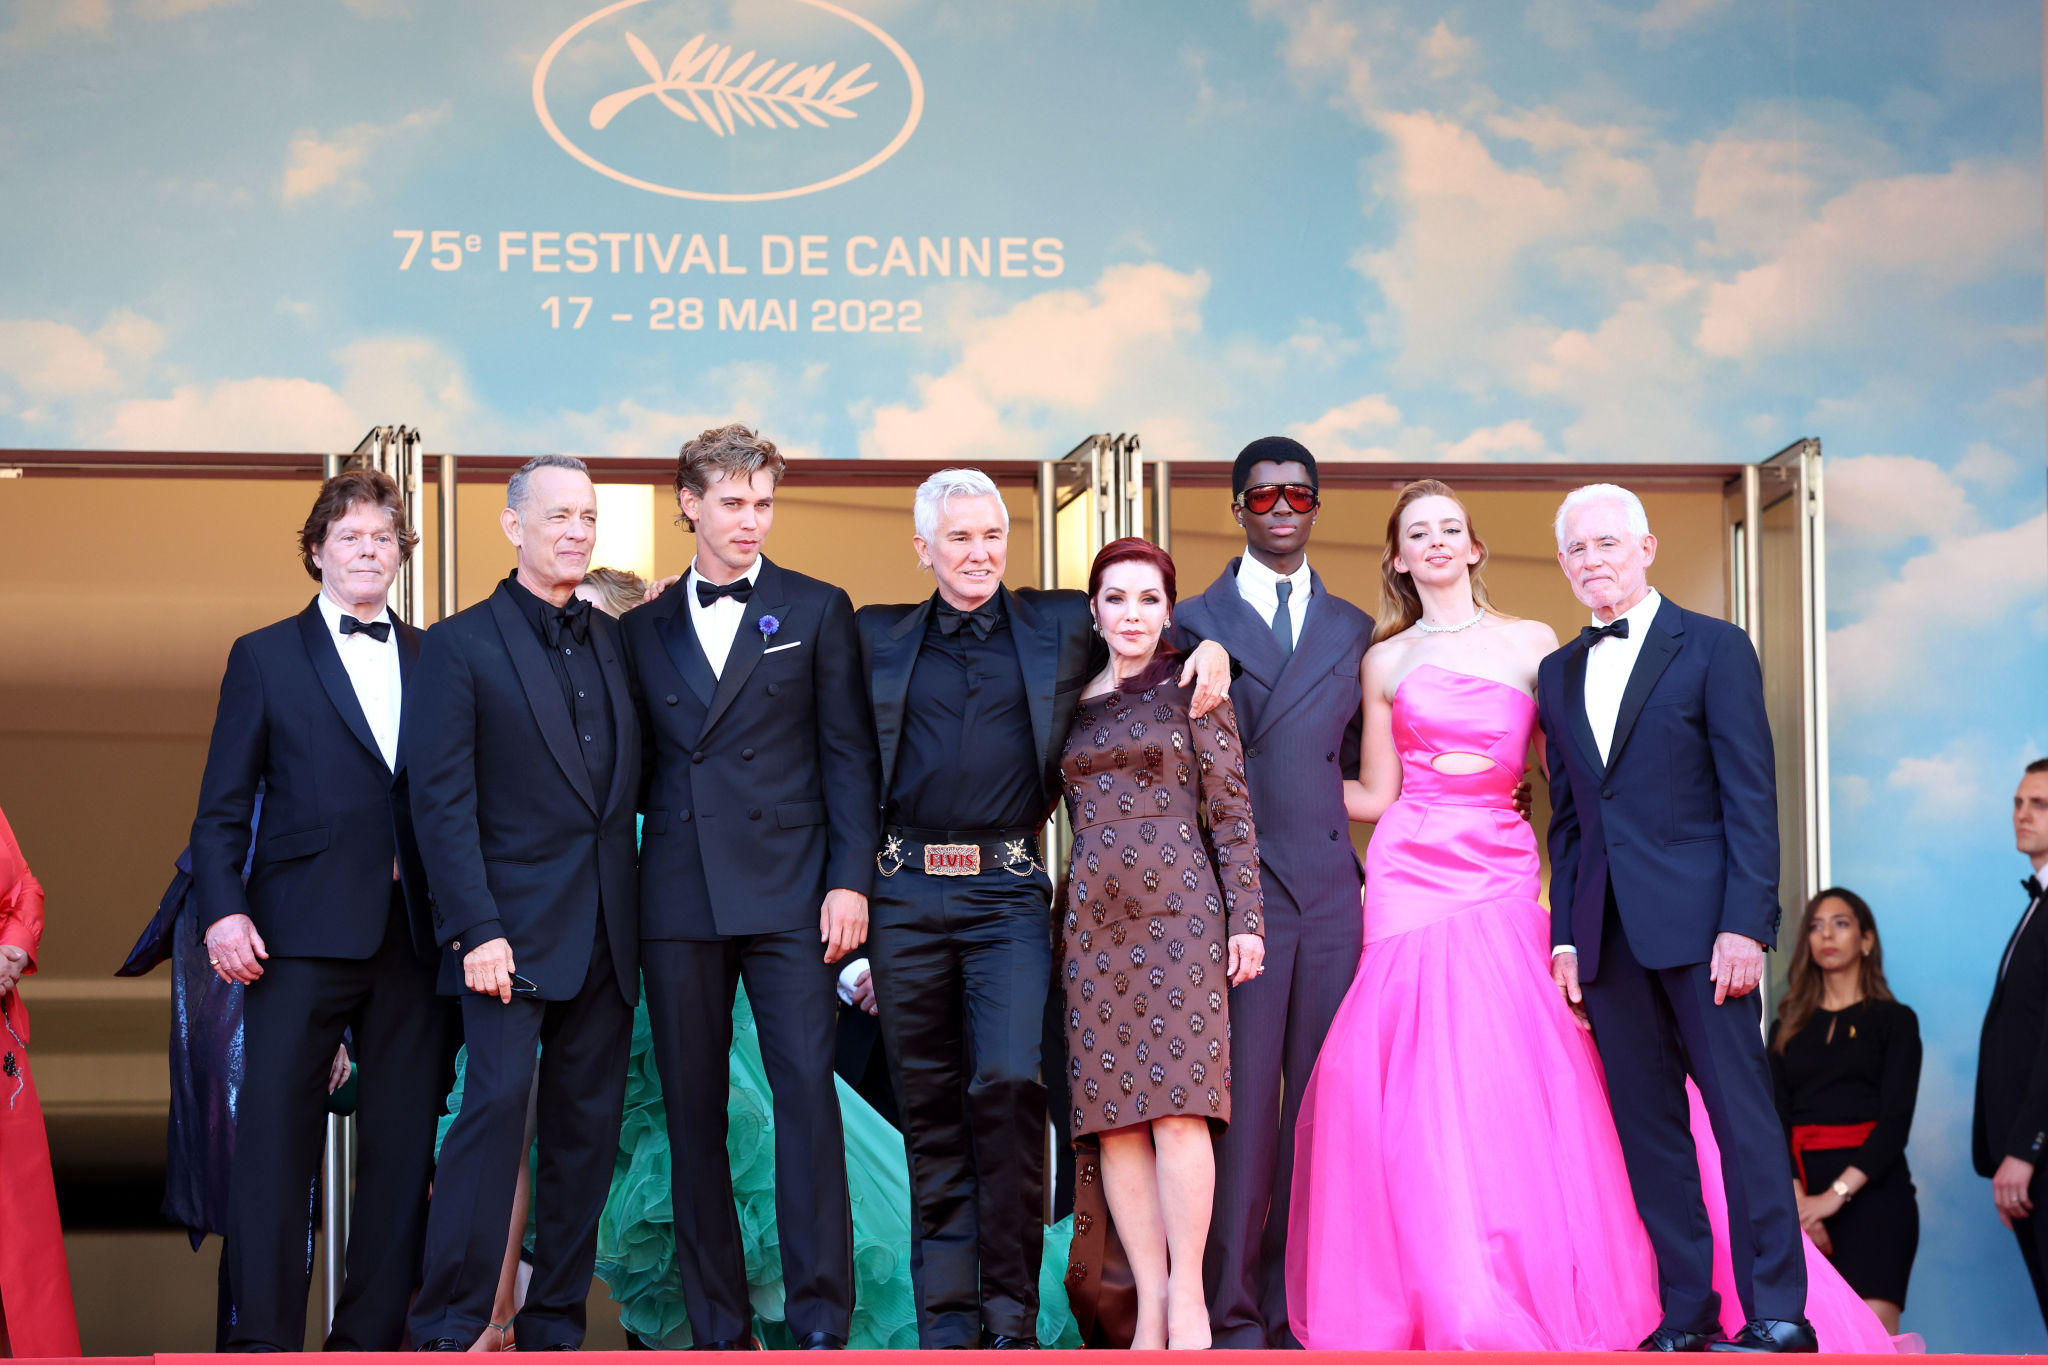 Ricky Martin y Shakira: la espectacular premiere de “Elvis” en Cannes